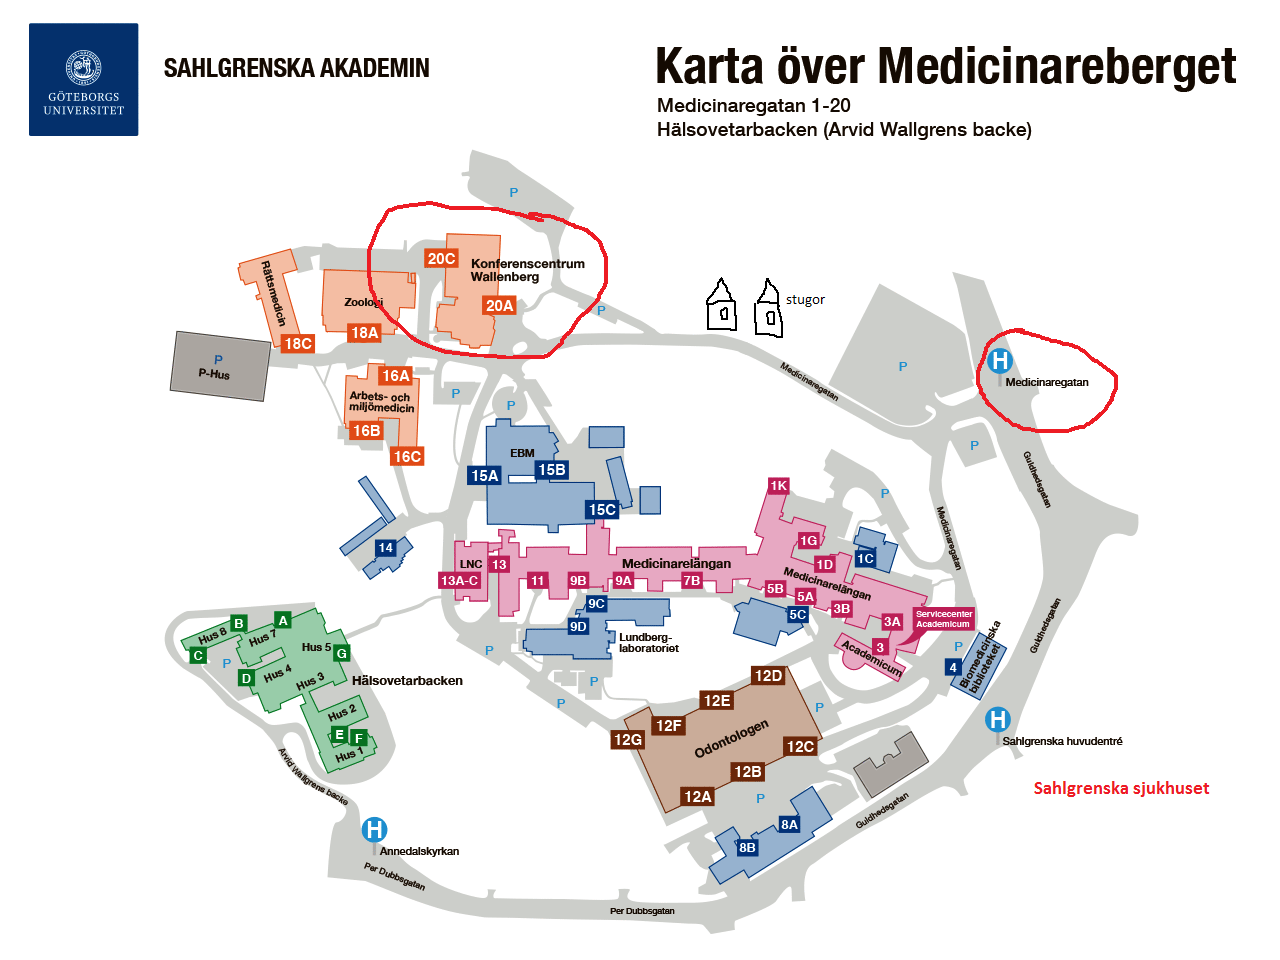 Kurslokal Kursen hålls på Göteborgs Universitets Konferenscentrum Wallenberg som ligger på "Medicinareberget", 5 min promenad från Sahlgrenska sjukhuset.